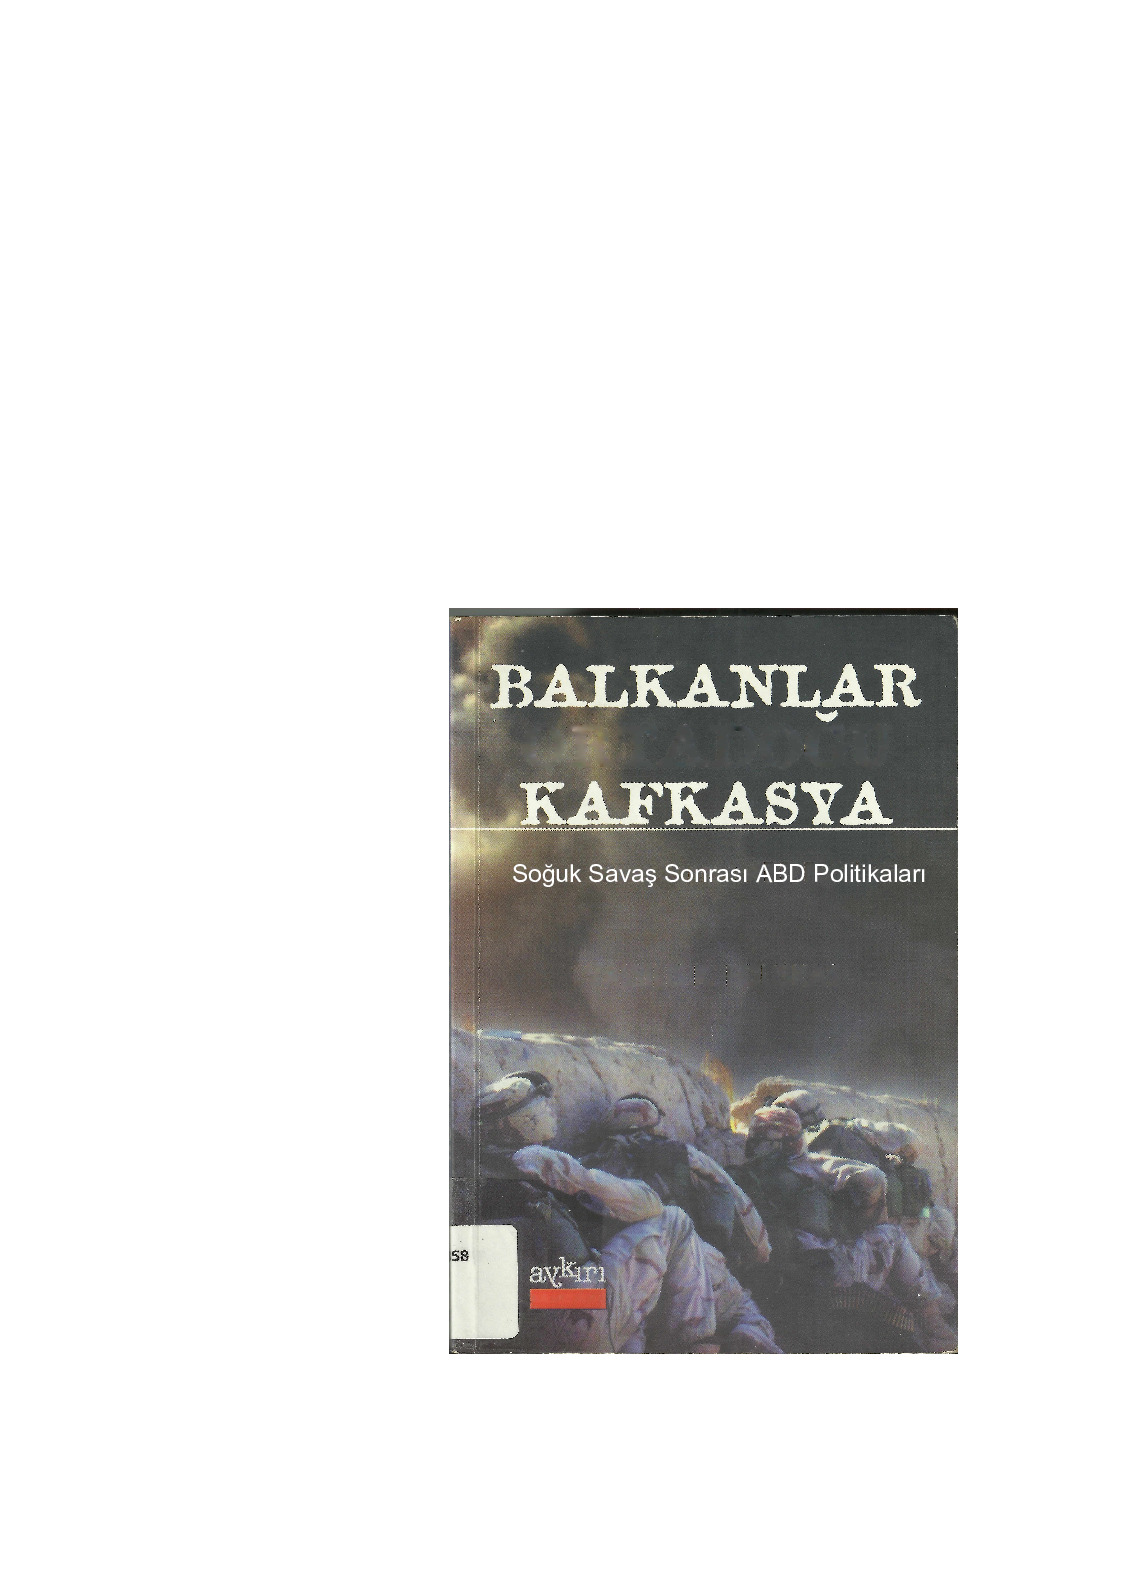 Balkanlar Ortadoghu Qafqazya-Soğuq Savaş-Vassilis K.Fouskas-Ali Çakıroğlu-218s